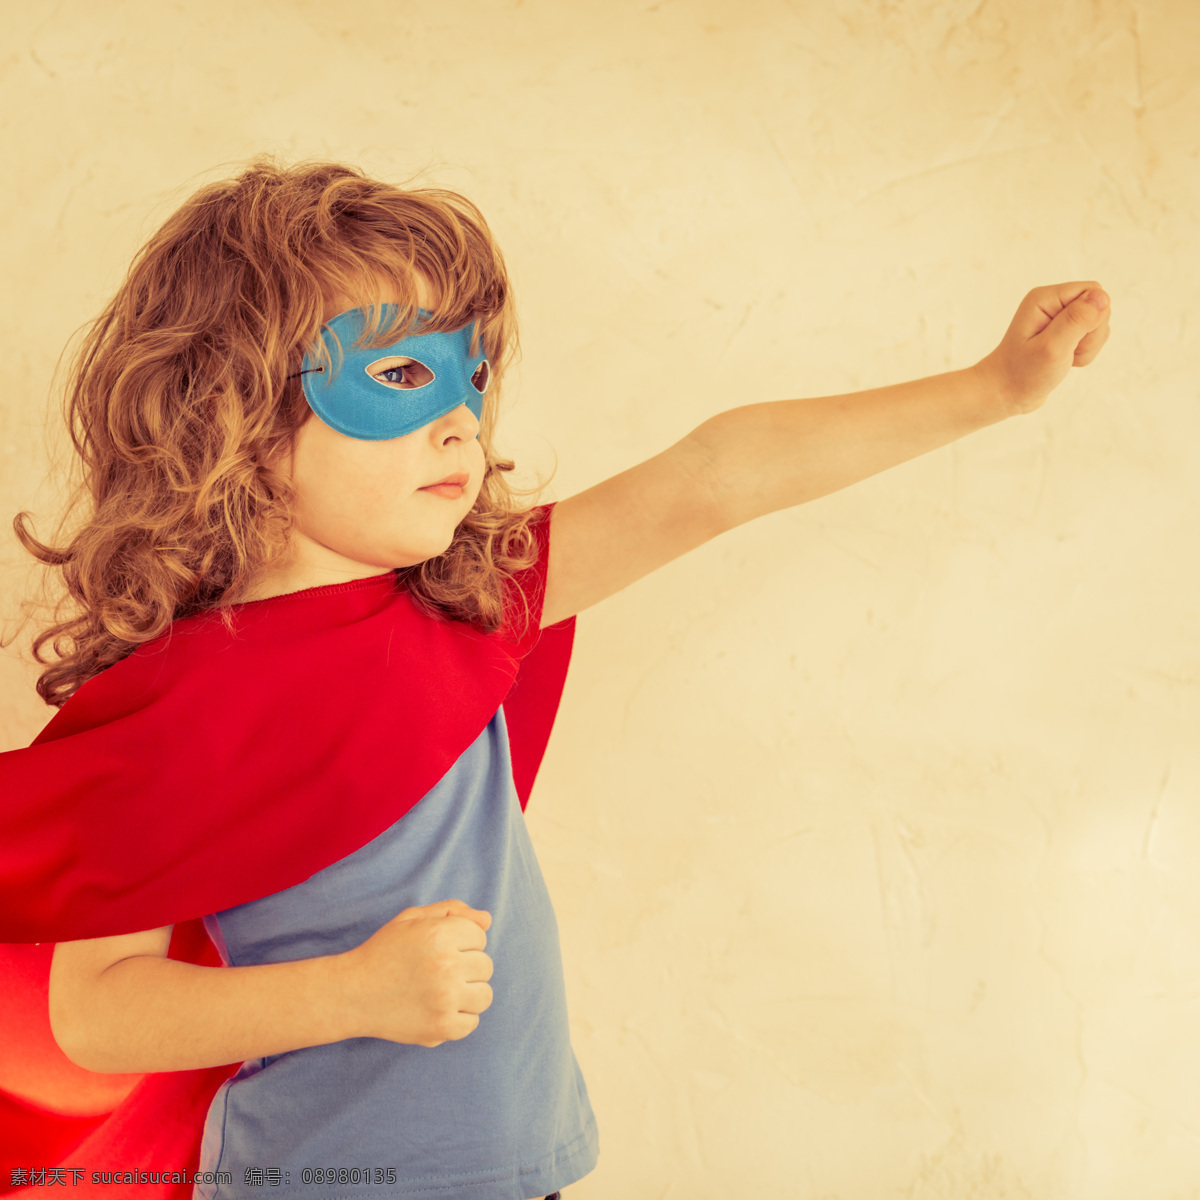 前进 儿童 动作 戴面具的超人 小英雄 超级英雄 外国男孩 小男孩 儿童超人 披风 儿童图片 人物图片